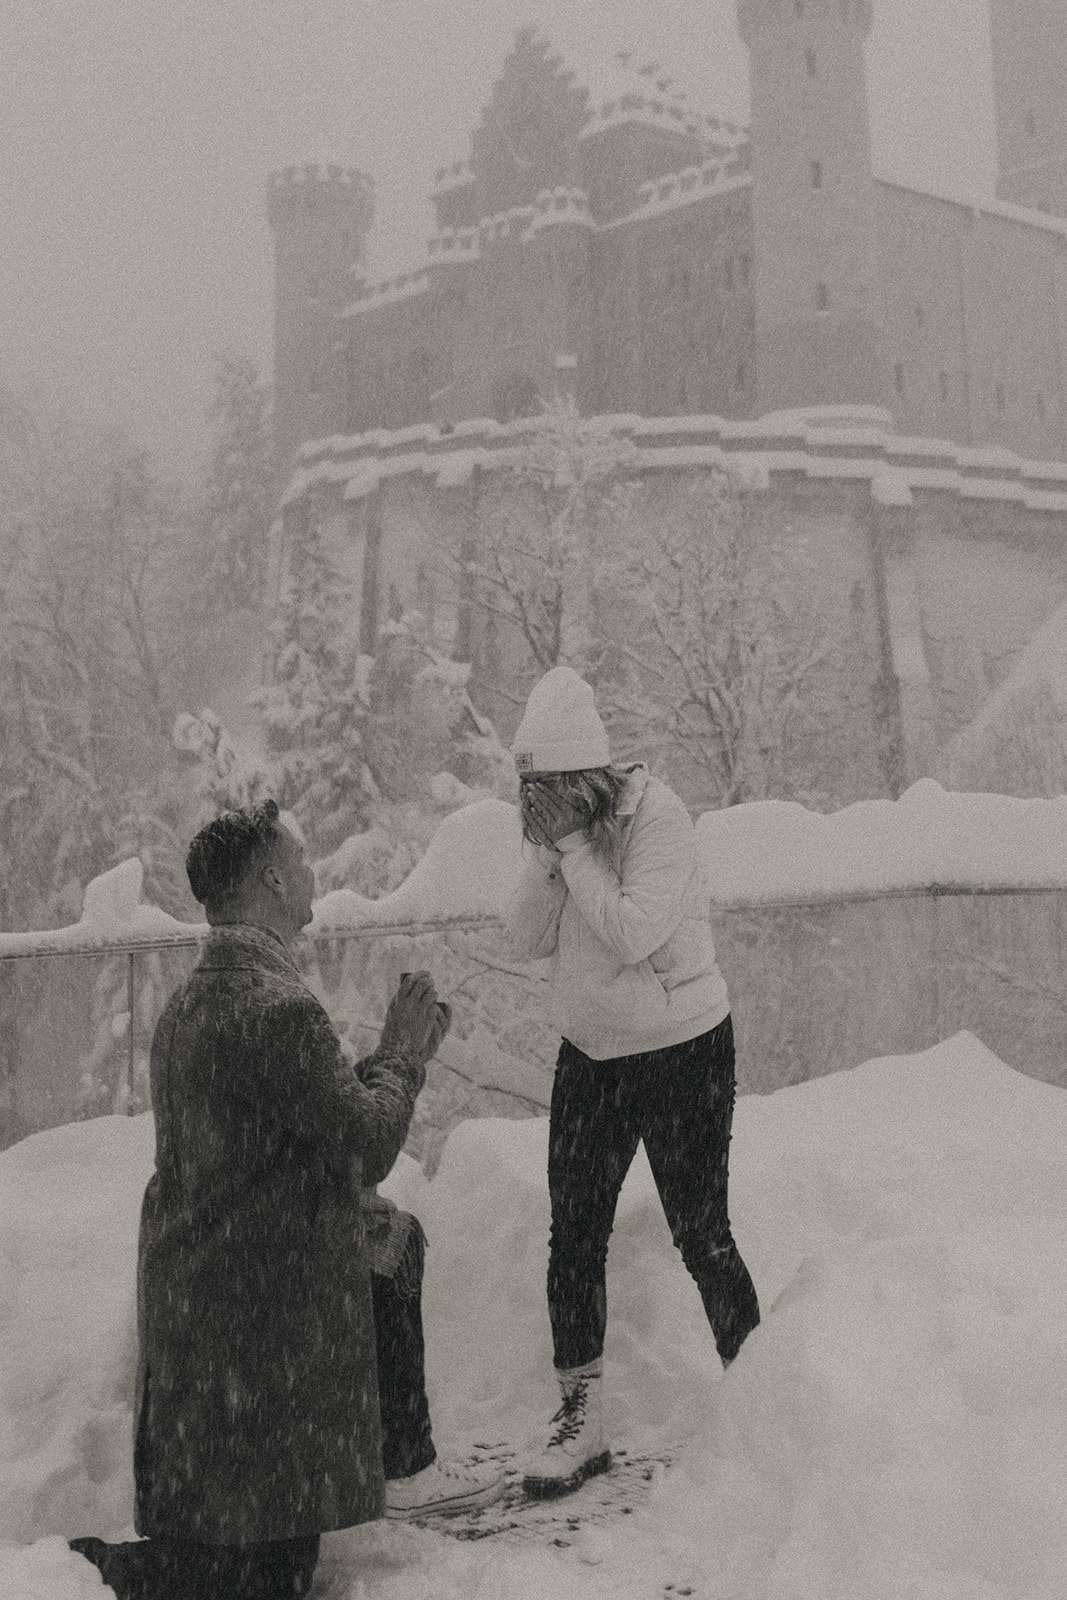 Snowy proposal at Neuschwanstein castle